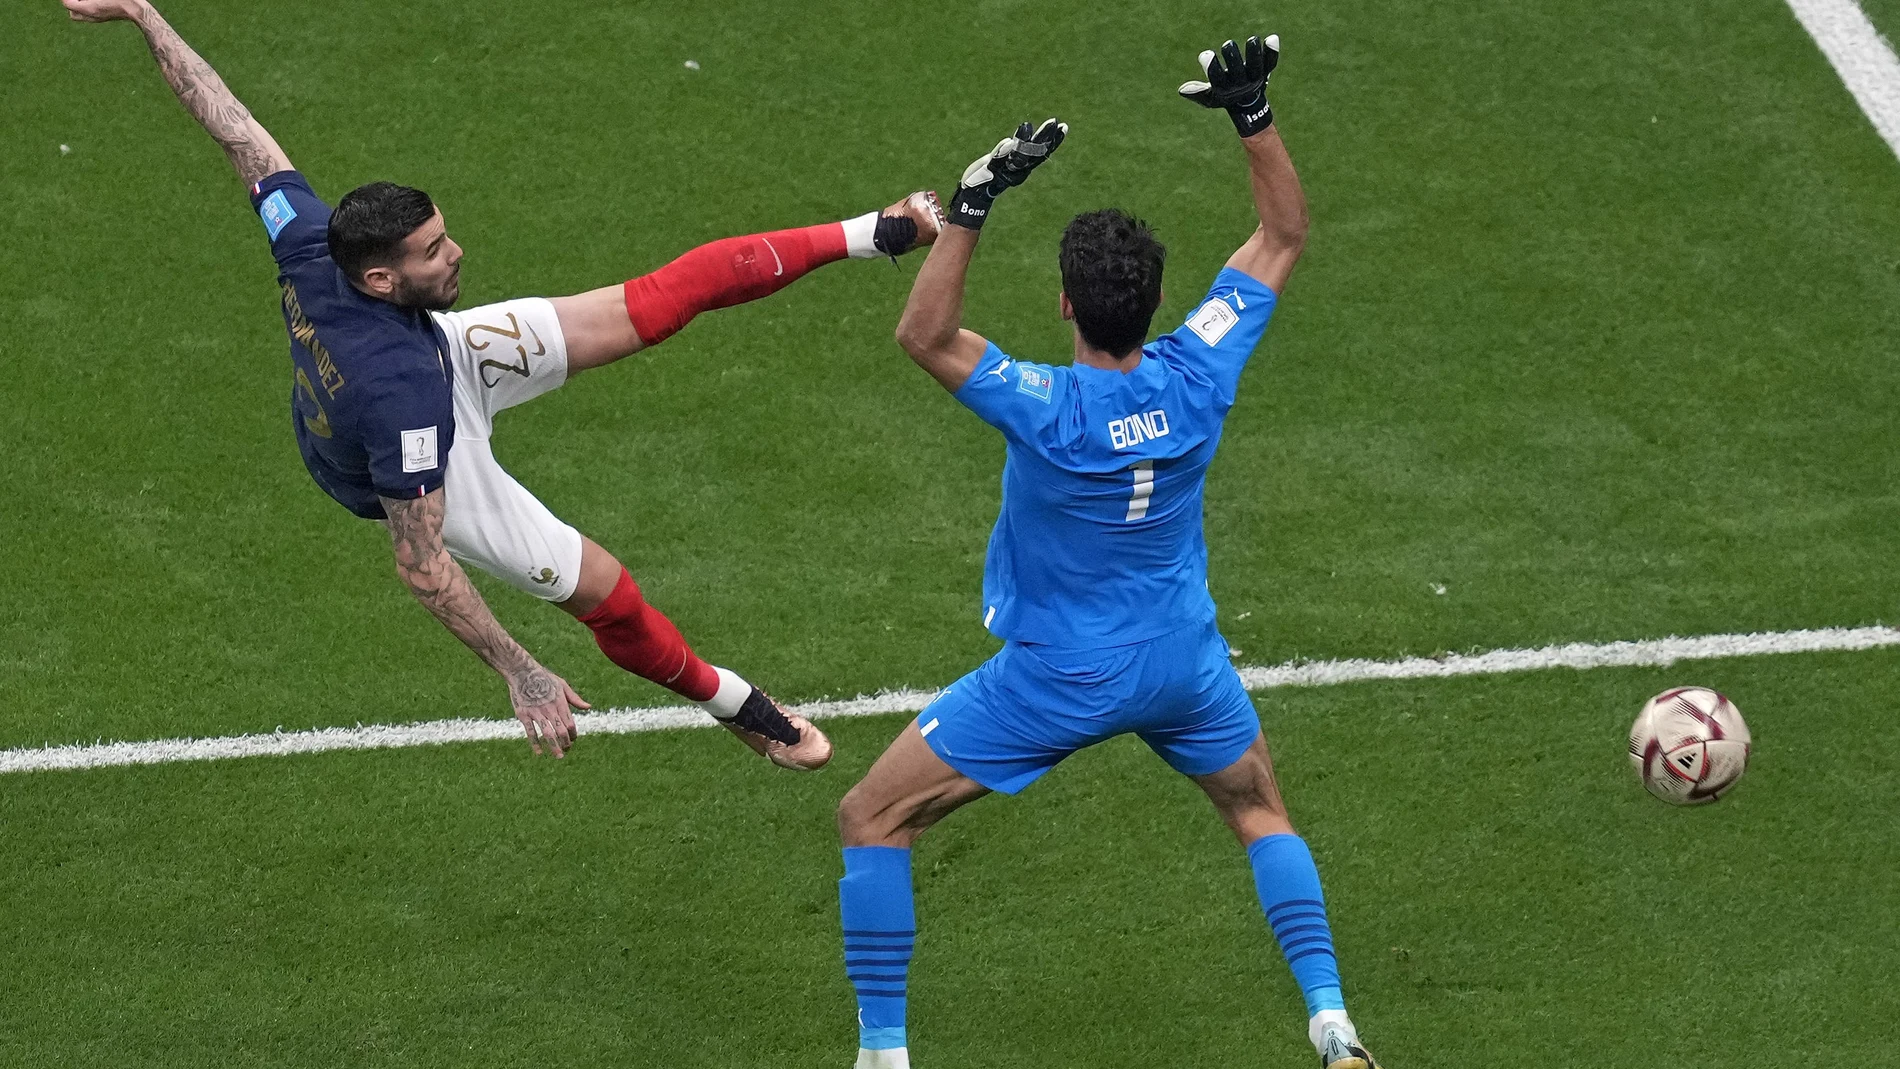 Theo marca el primer gol del Francia - Marruecos, la semifinal del Mundial de Qatar 2022